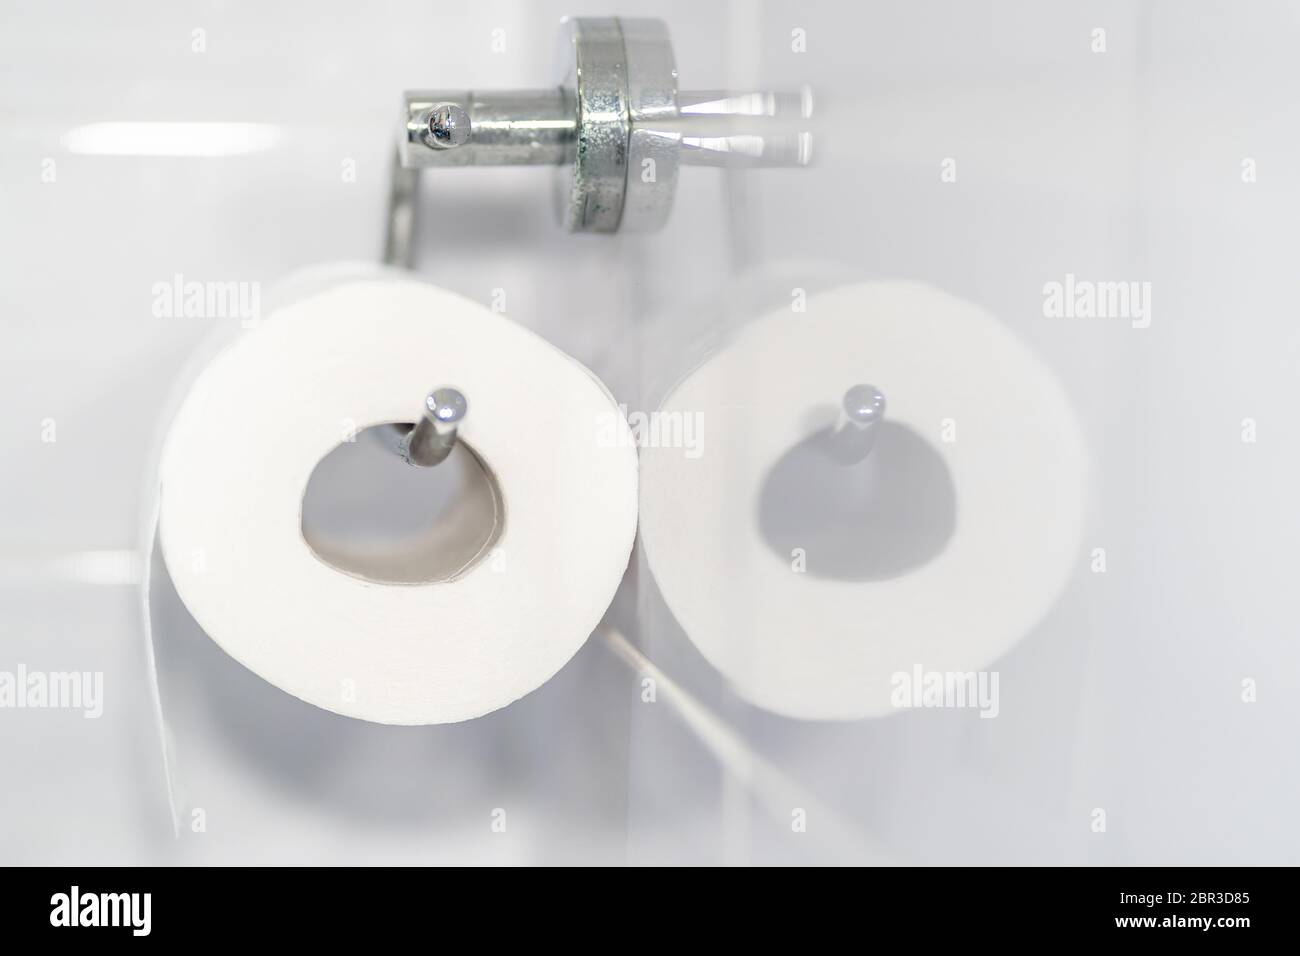 Gros plan d'un rouleau de papier toilette blanc et doux accroché à un support moderne en chrome dans une salle de bain lumineuse. Se reflète dans le carrelage de la salle de bains. Banque D'Images